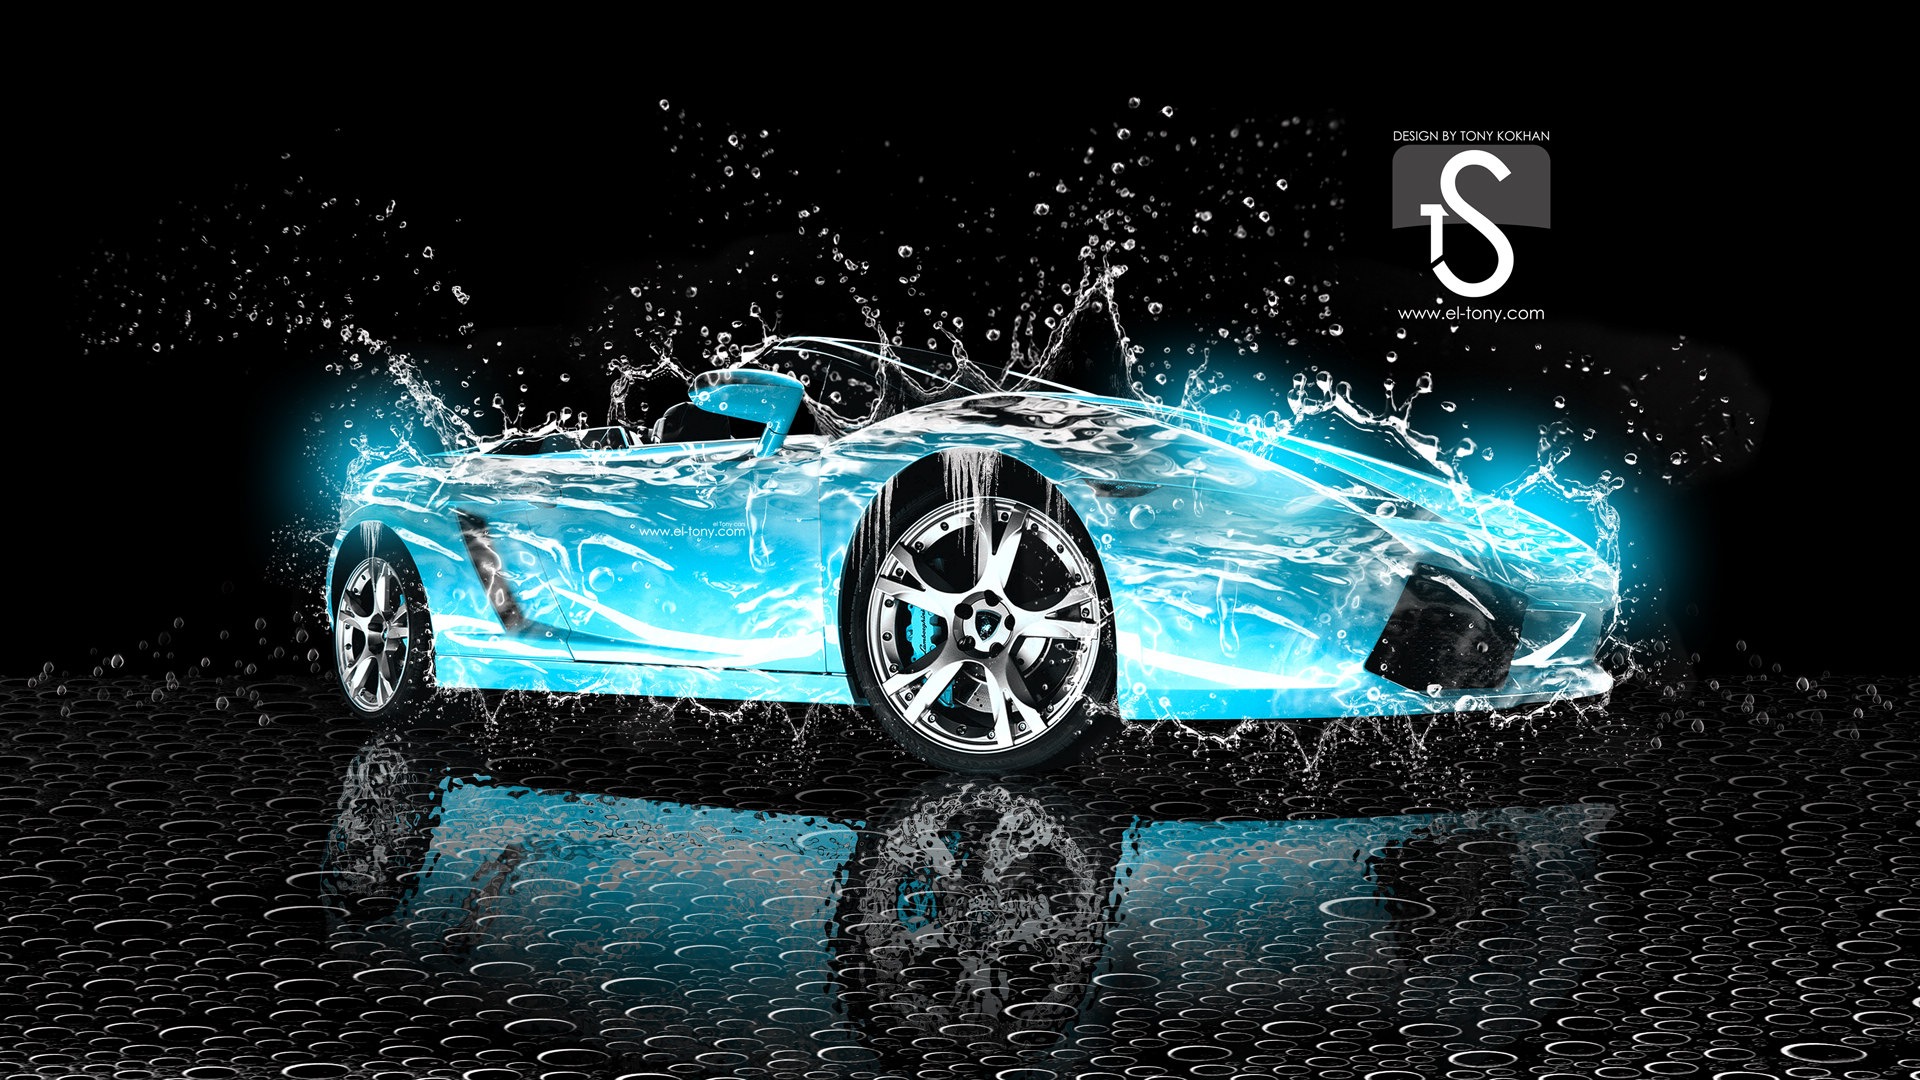 물 방울 스플래시, 아름다운 차 크리 에이 티브 디자인 배경 화면 #22 - 1920x1080